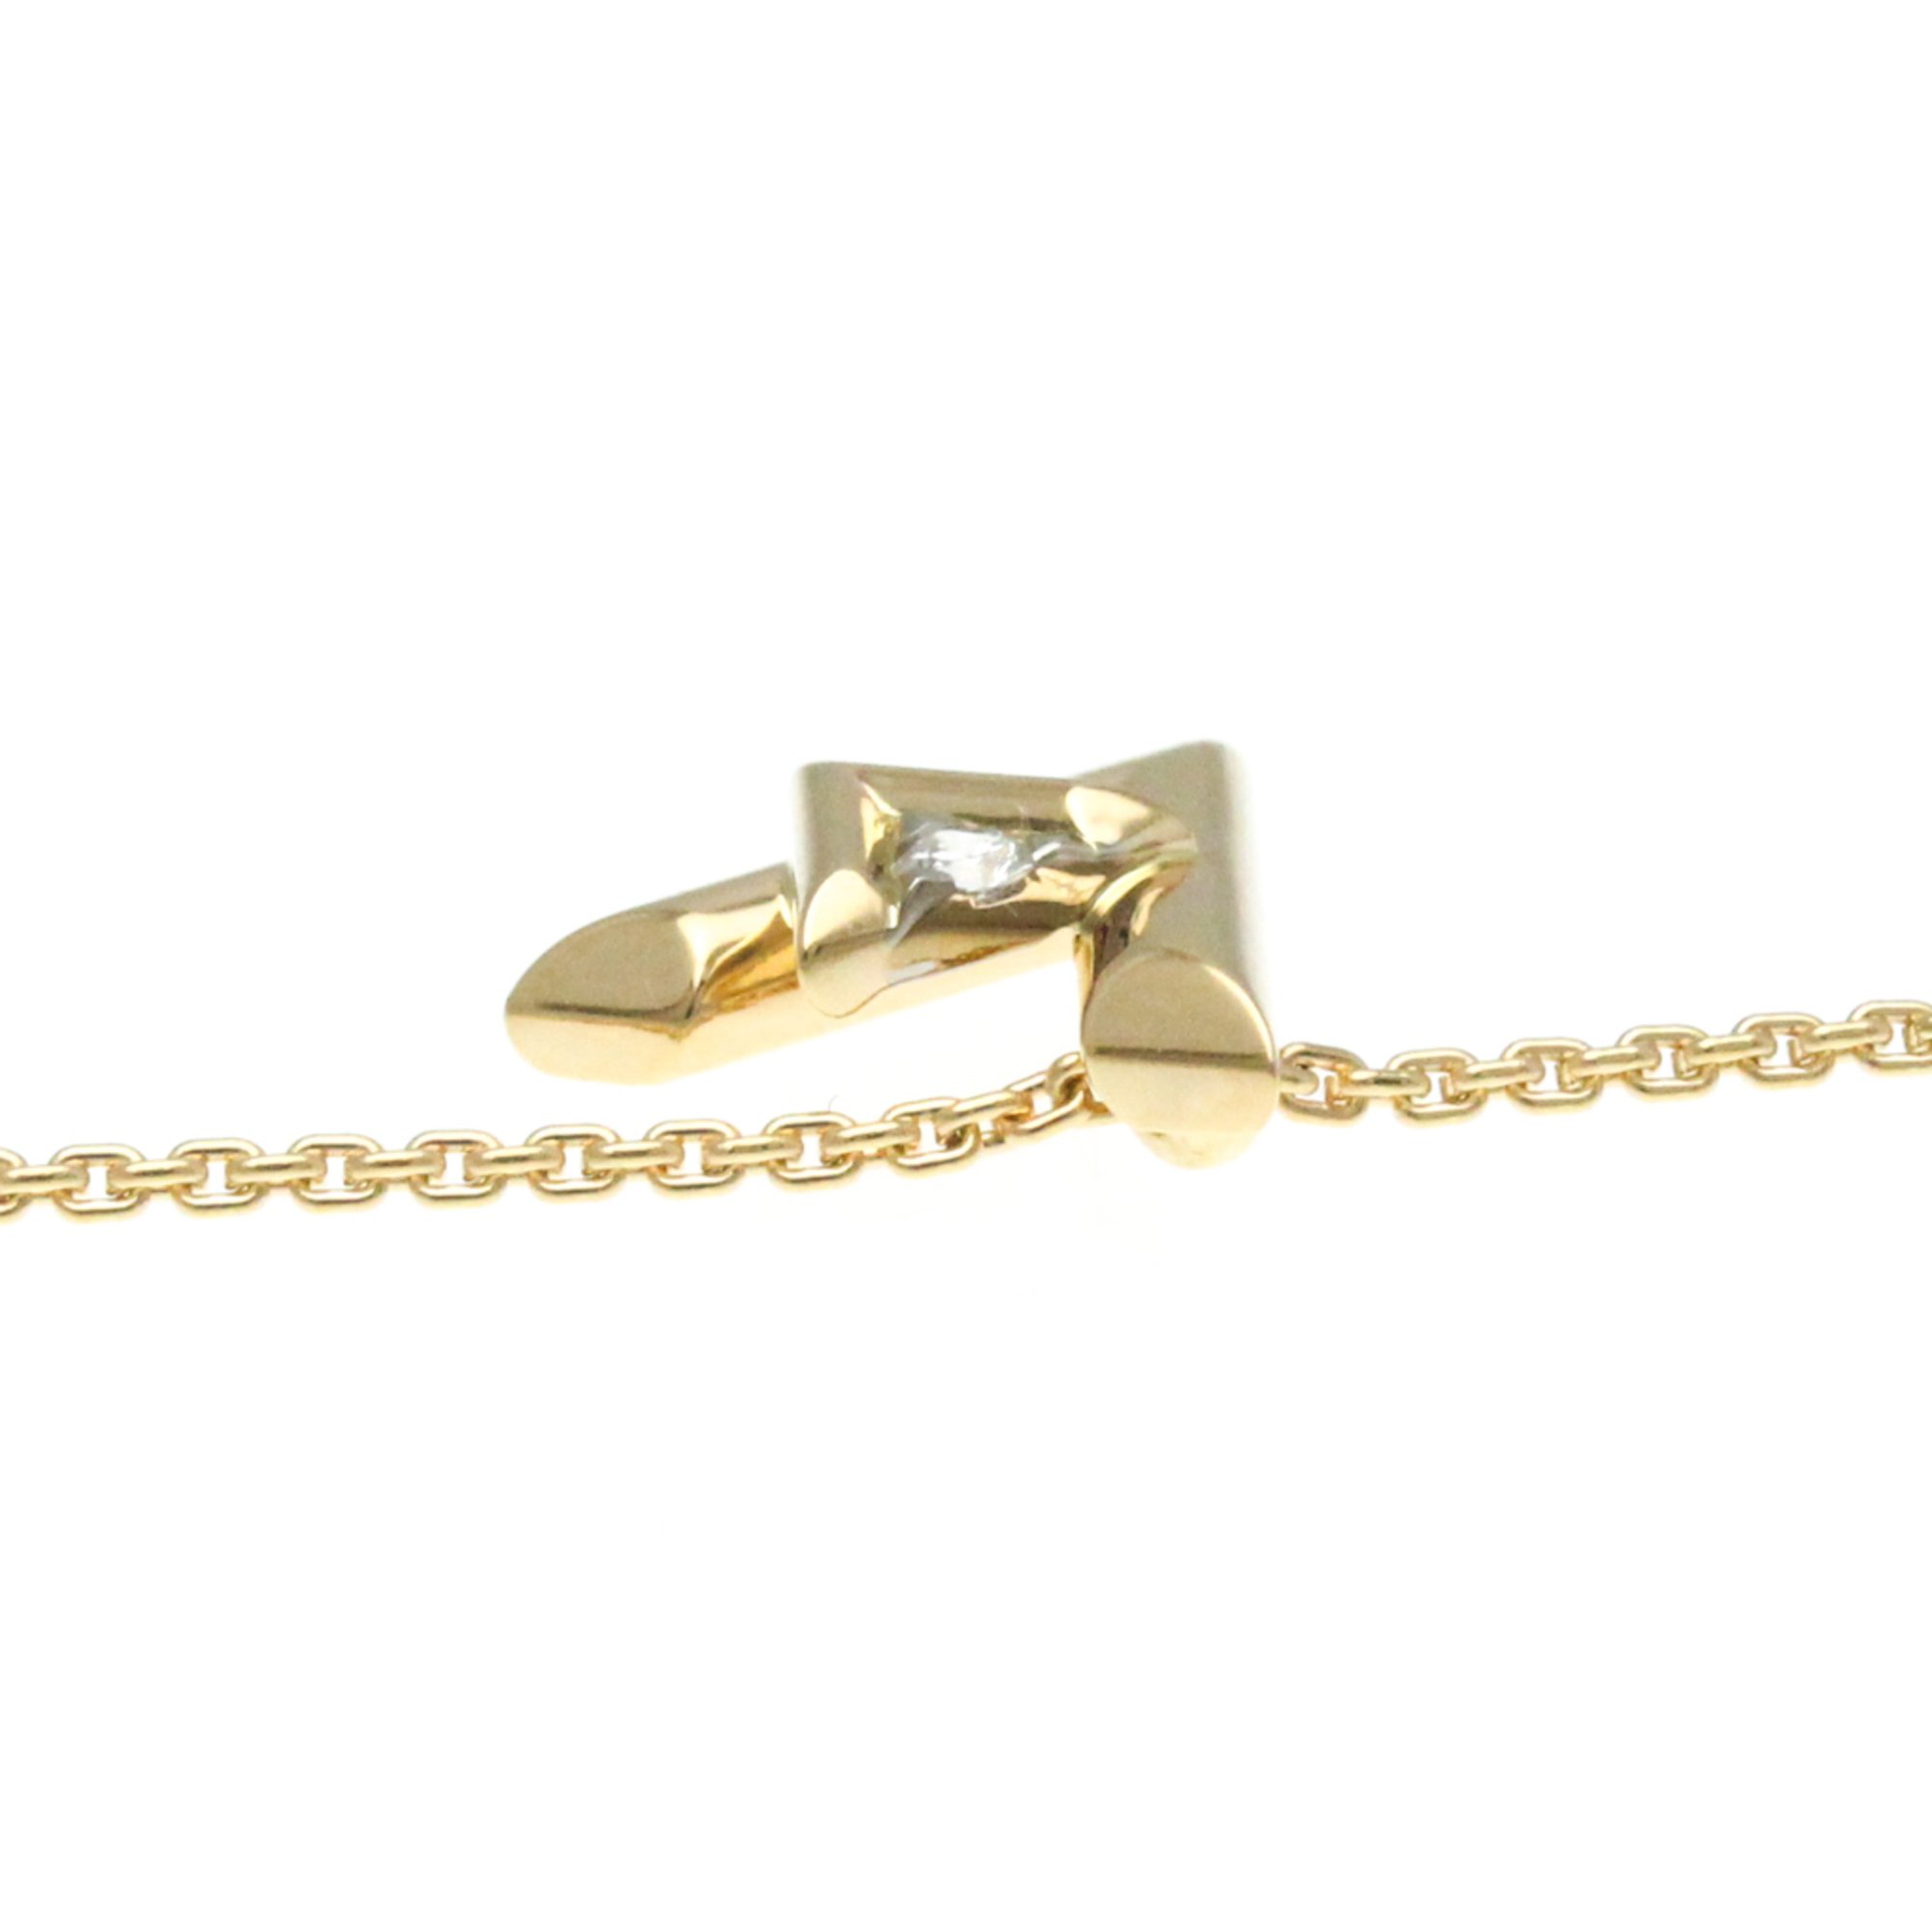 Louis Vuitton Pendant Volto One PM Q93813 Pink Gold (18K) Diamond Men,Women Fashion Pendant Necklace Carat/0.03 (Pink Gold)